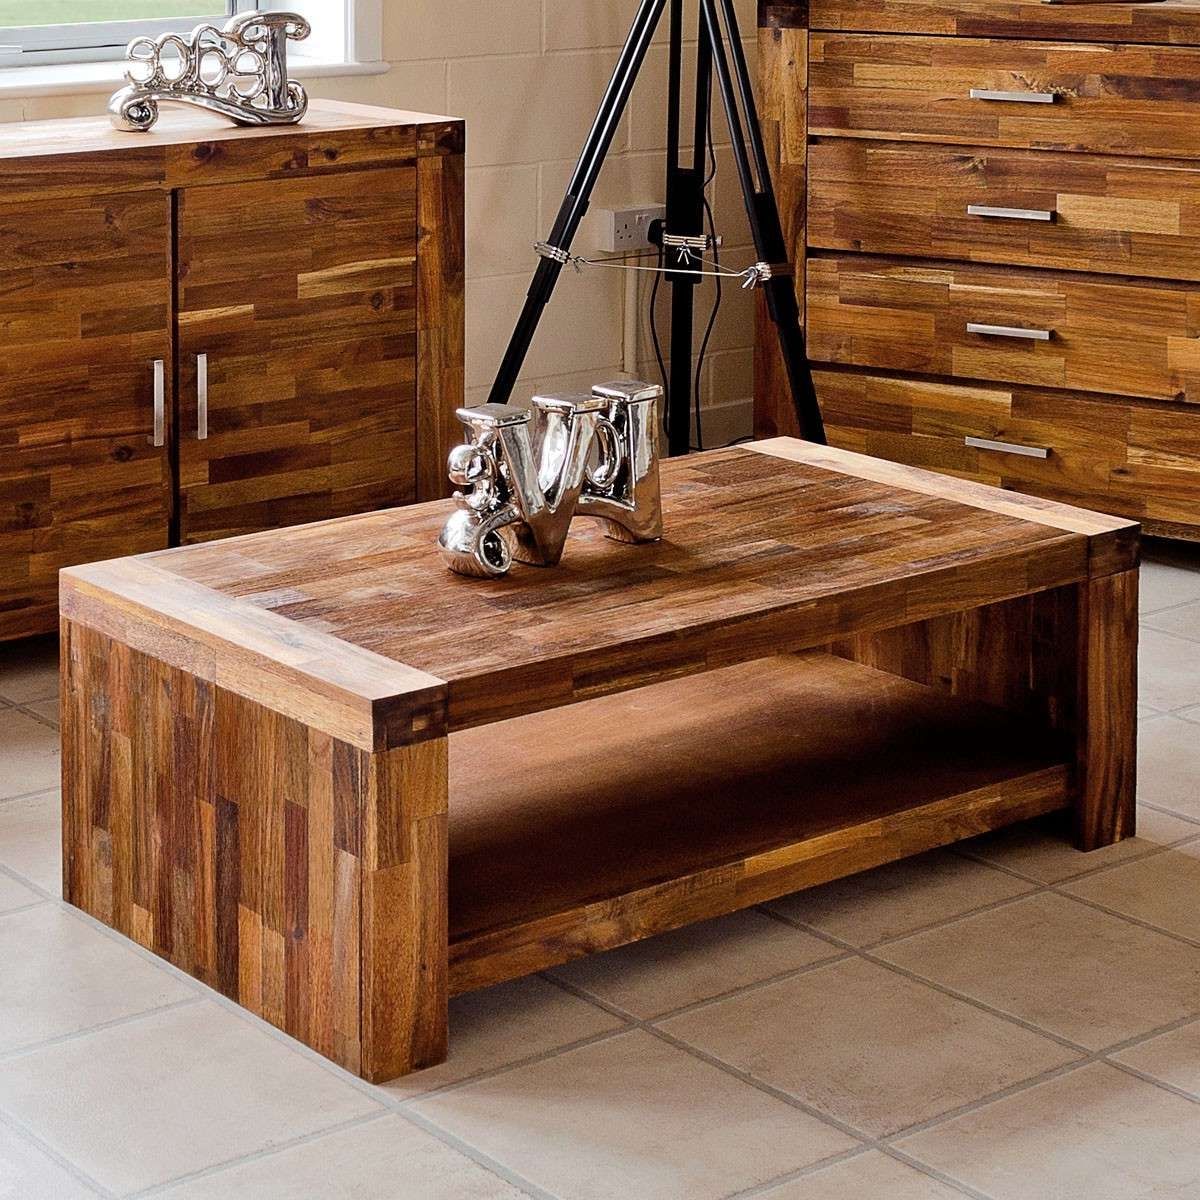 Wooden мебель. Мебель из дерева. Дерево для мебели. Деревянные предметы интерьера. Современная деревянная мебель.